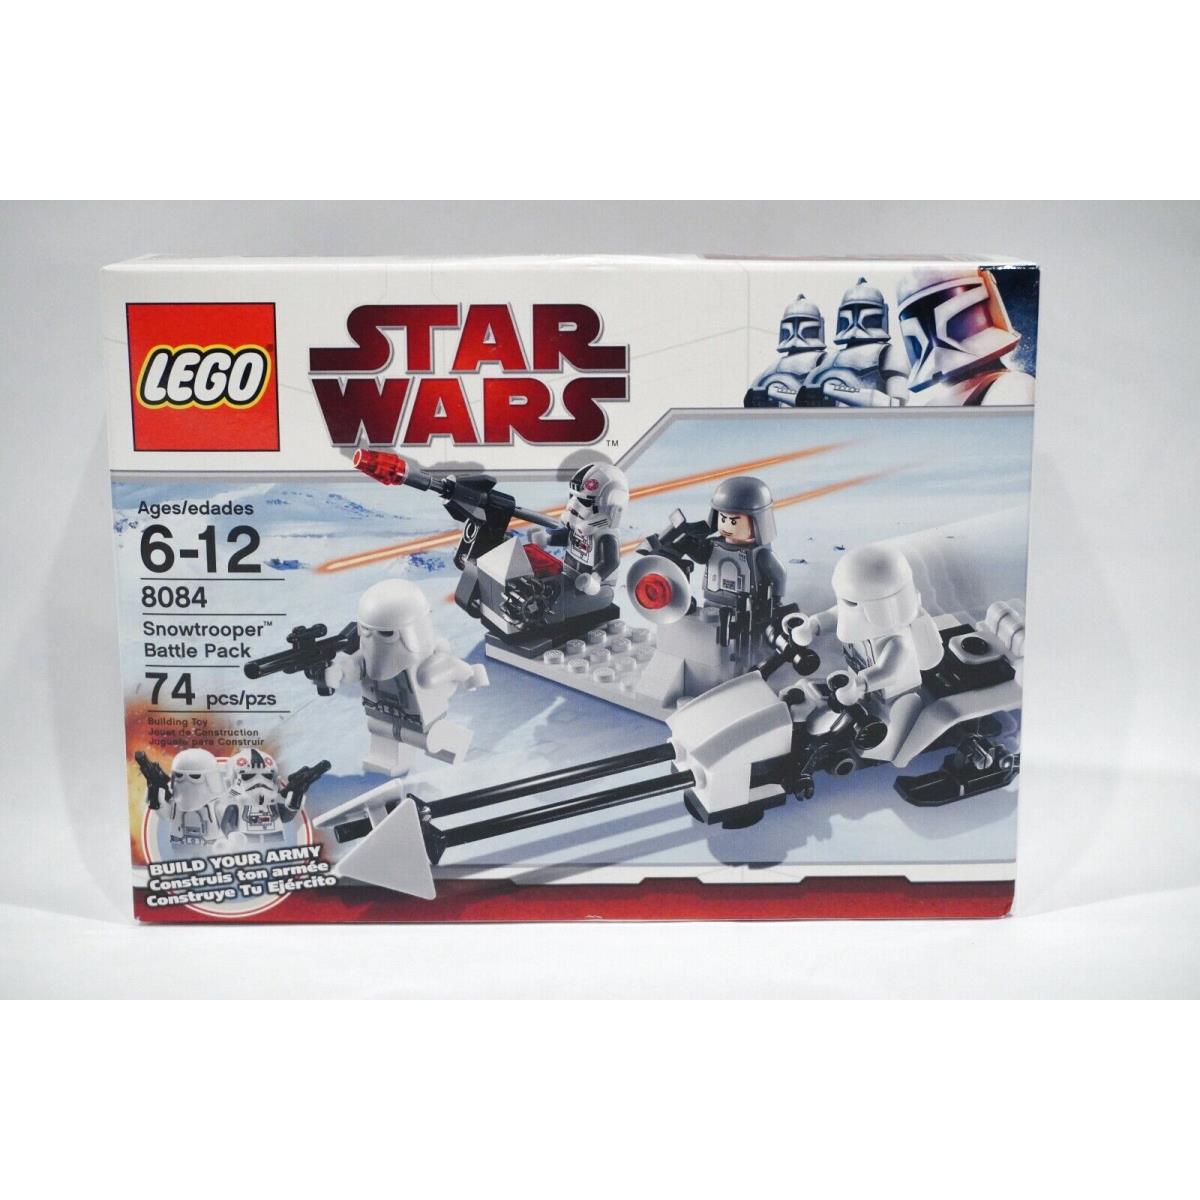 Lego 8084 Star Wars Snowtrooper Battle Pack Retired Set Rare